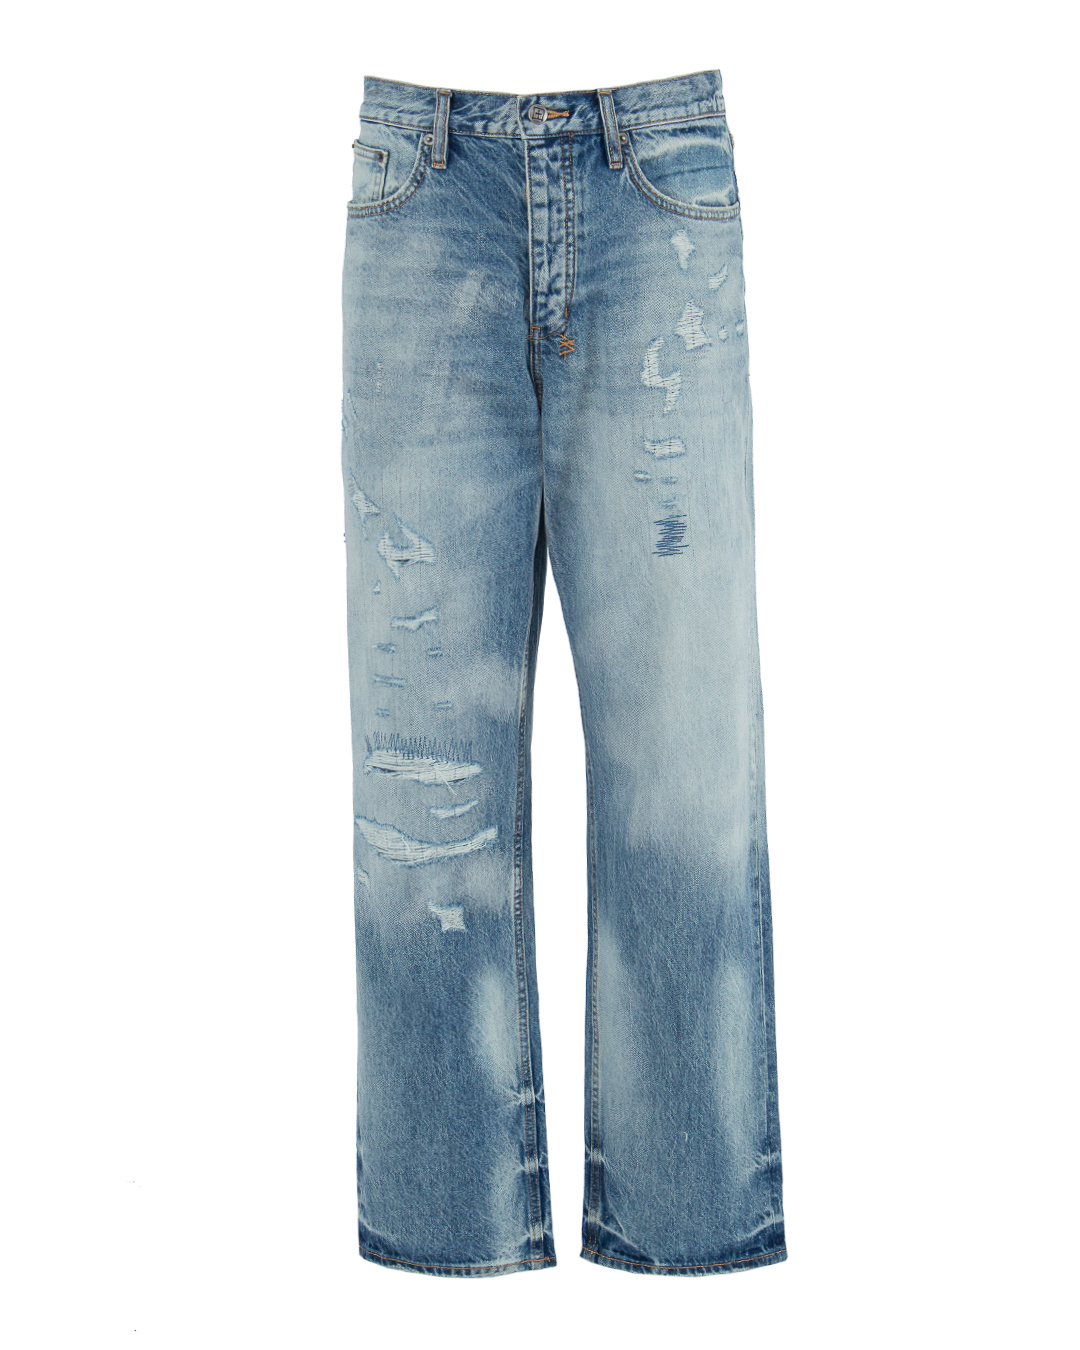 джинсы KSUBI MSP23DJ009 синий 31, размер 31 - фото 1